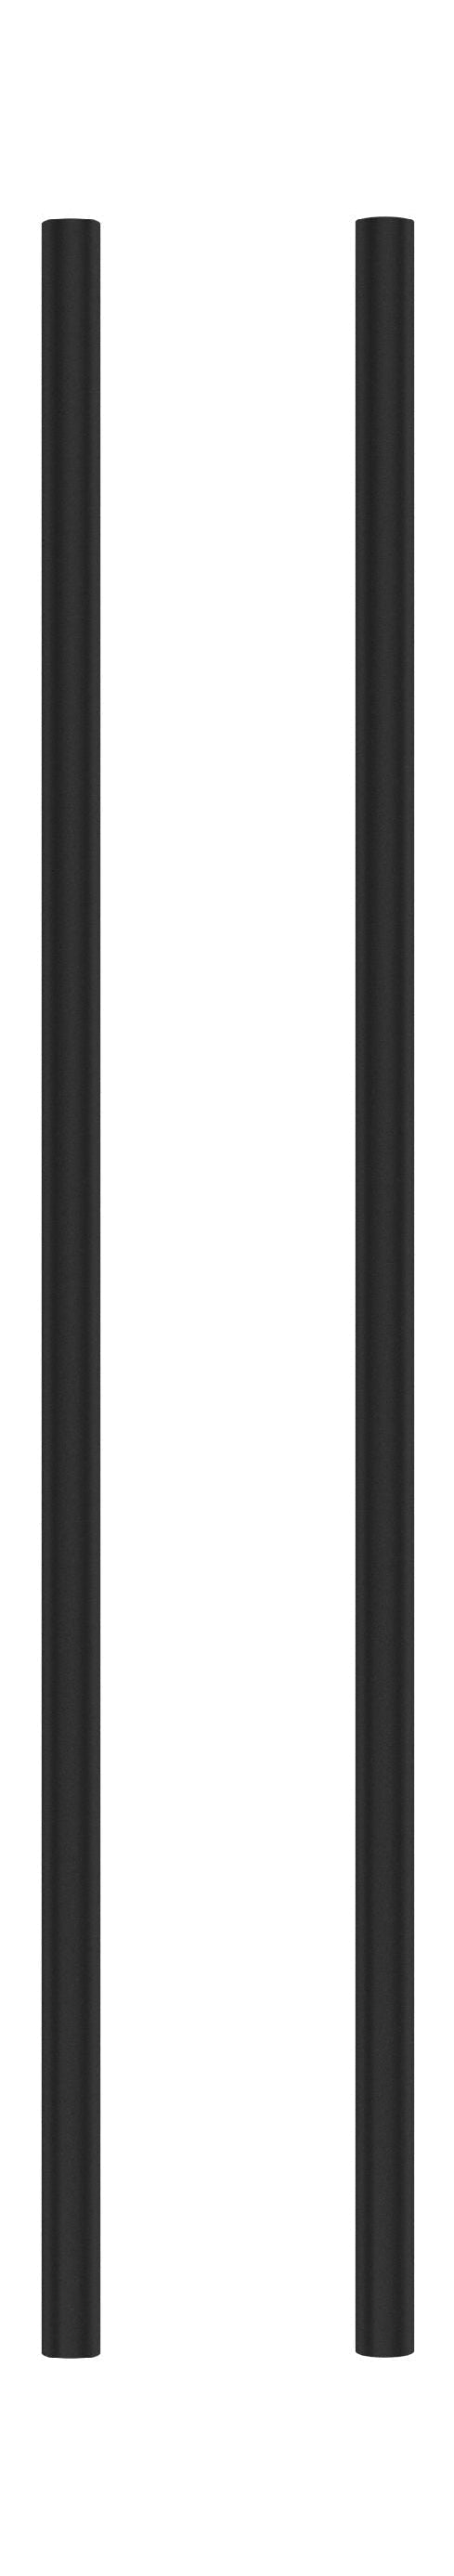 Moebe Spling -systeem/muurplanken been 65 cm, zwart